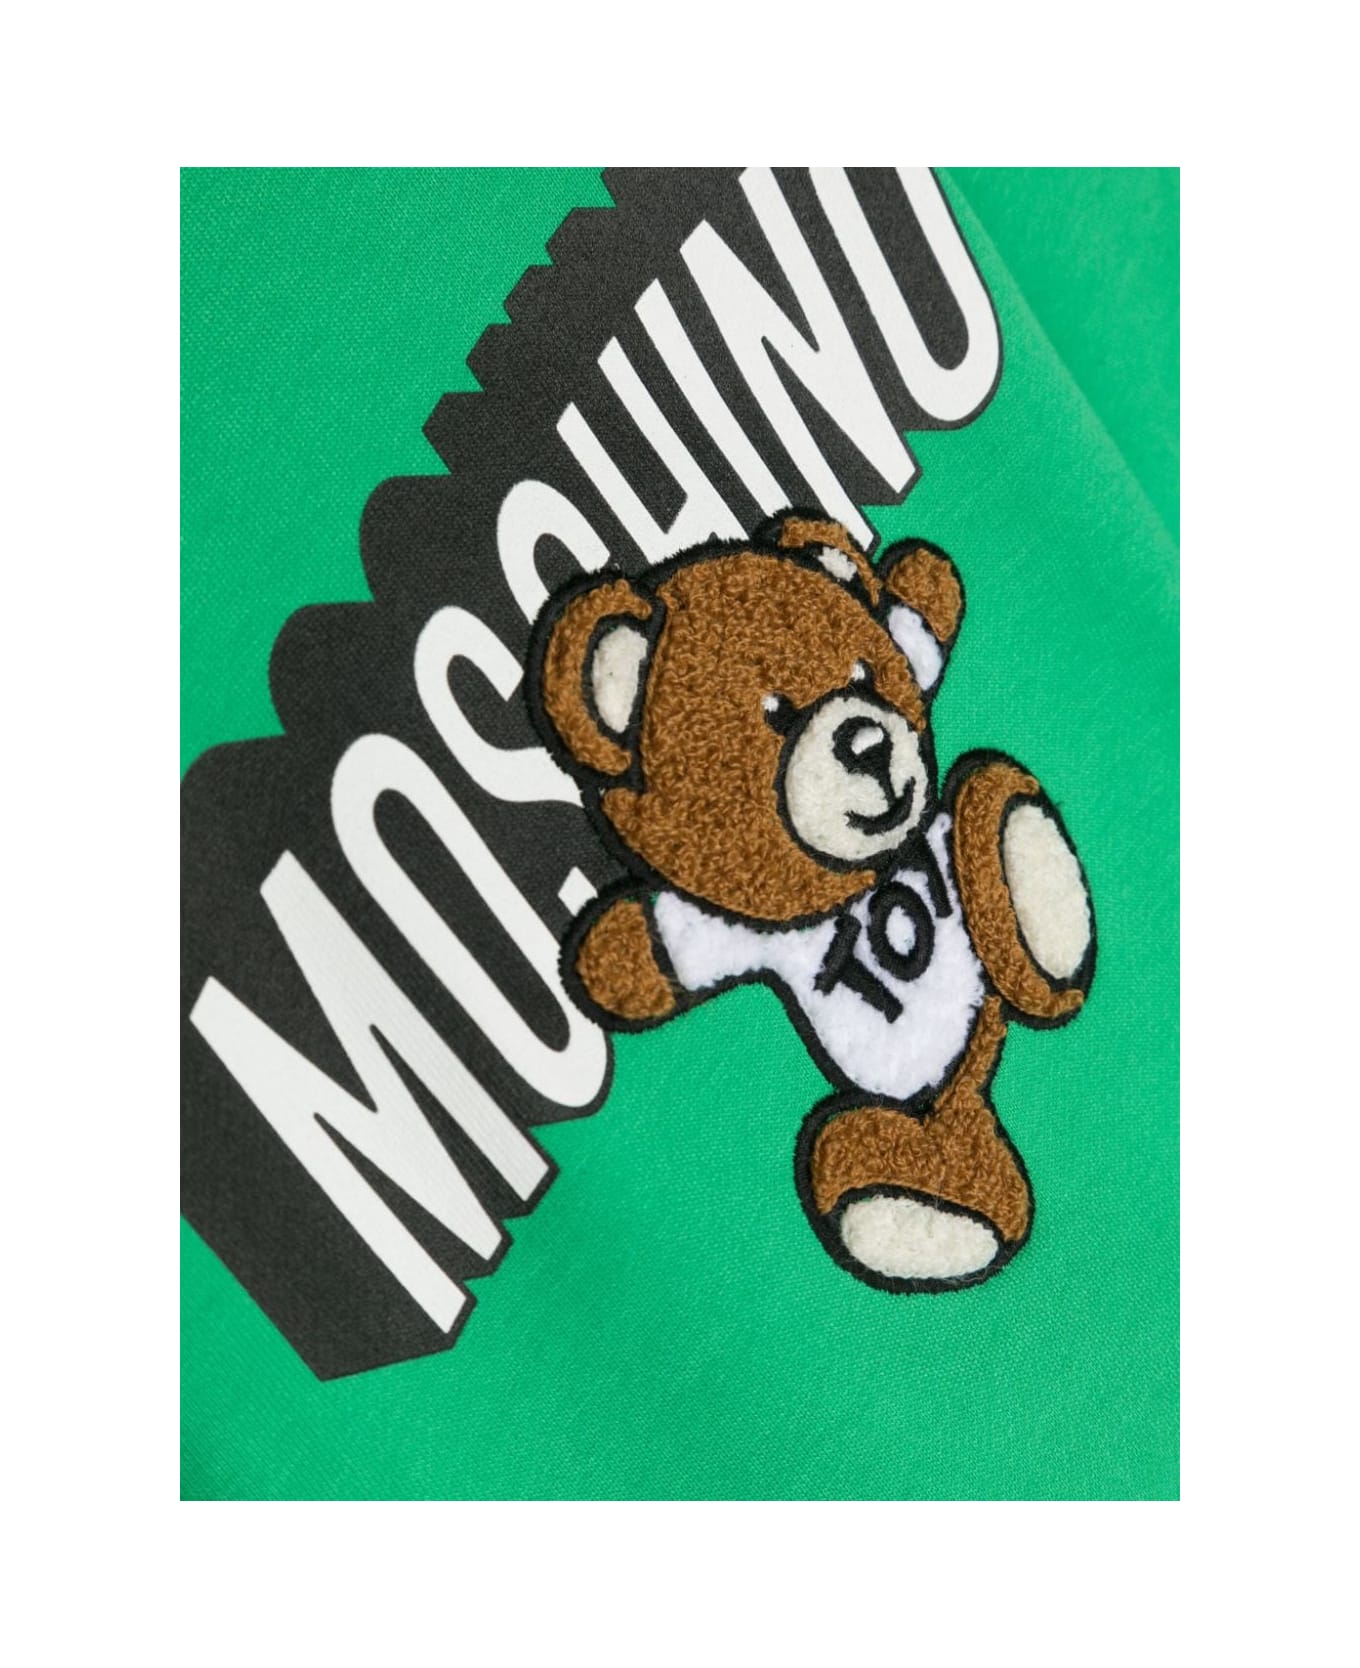 Moschino Felpa Con Logo - Green